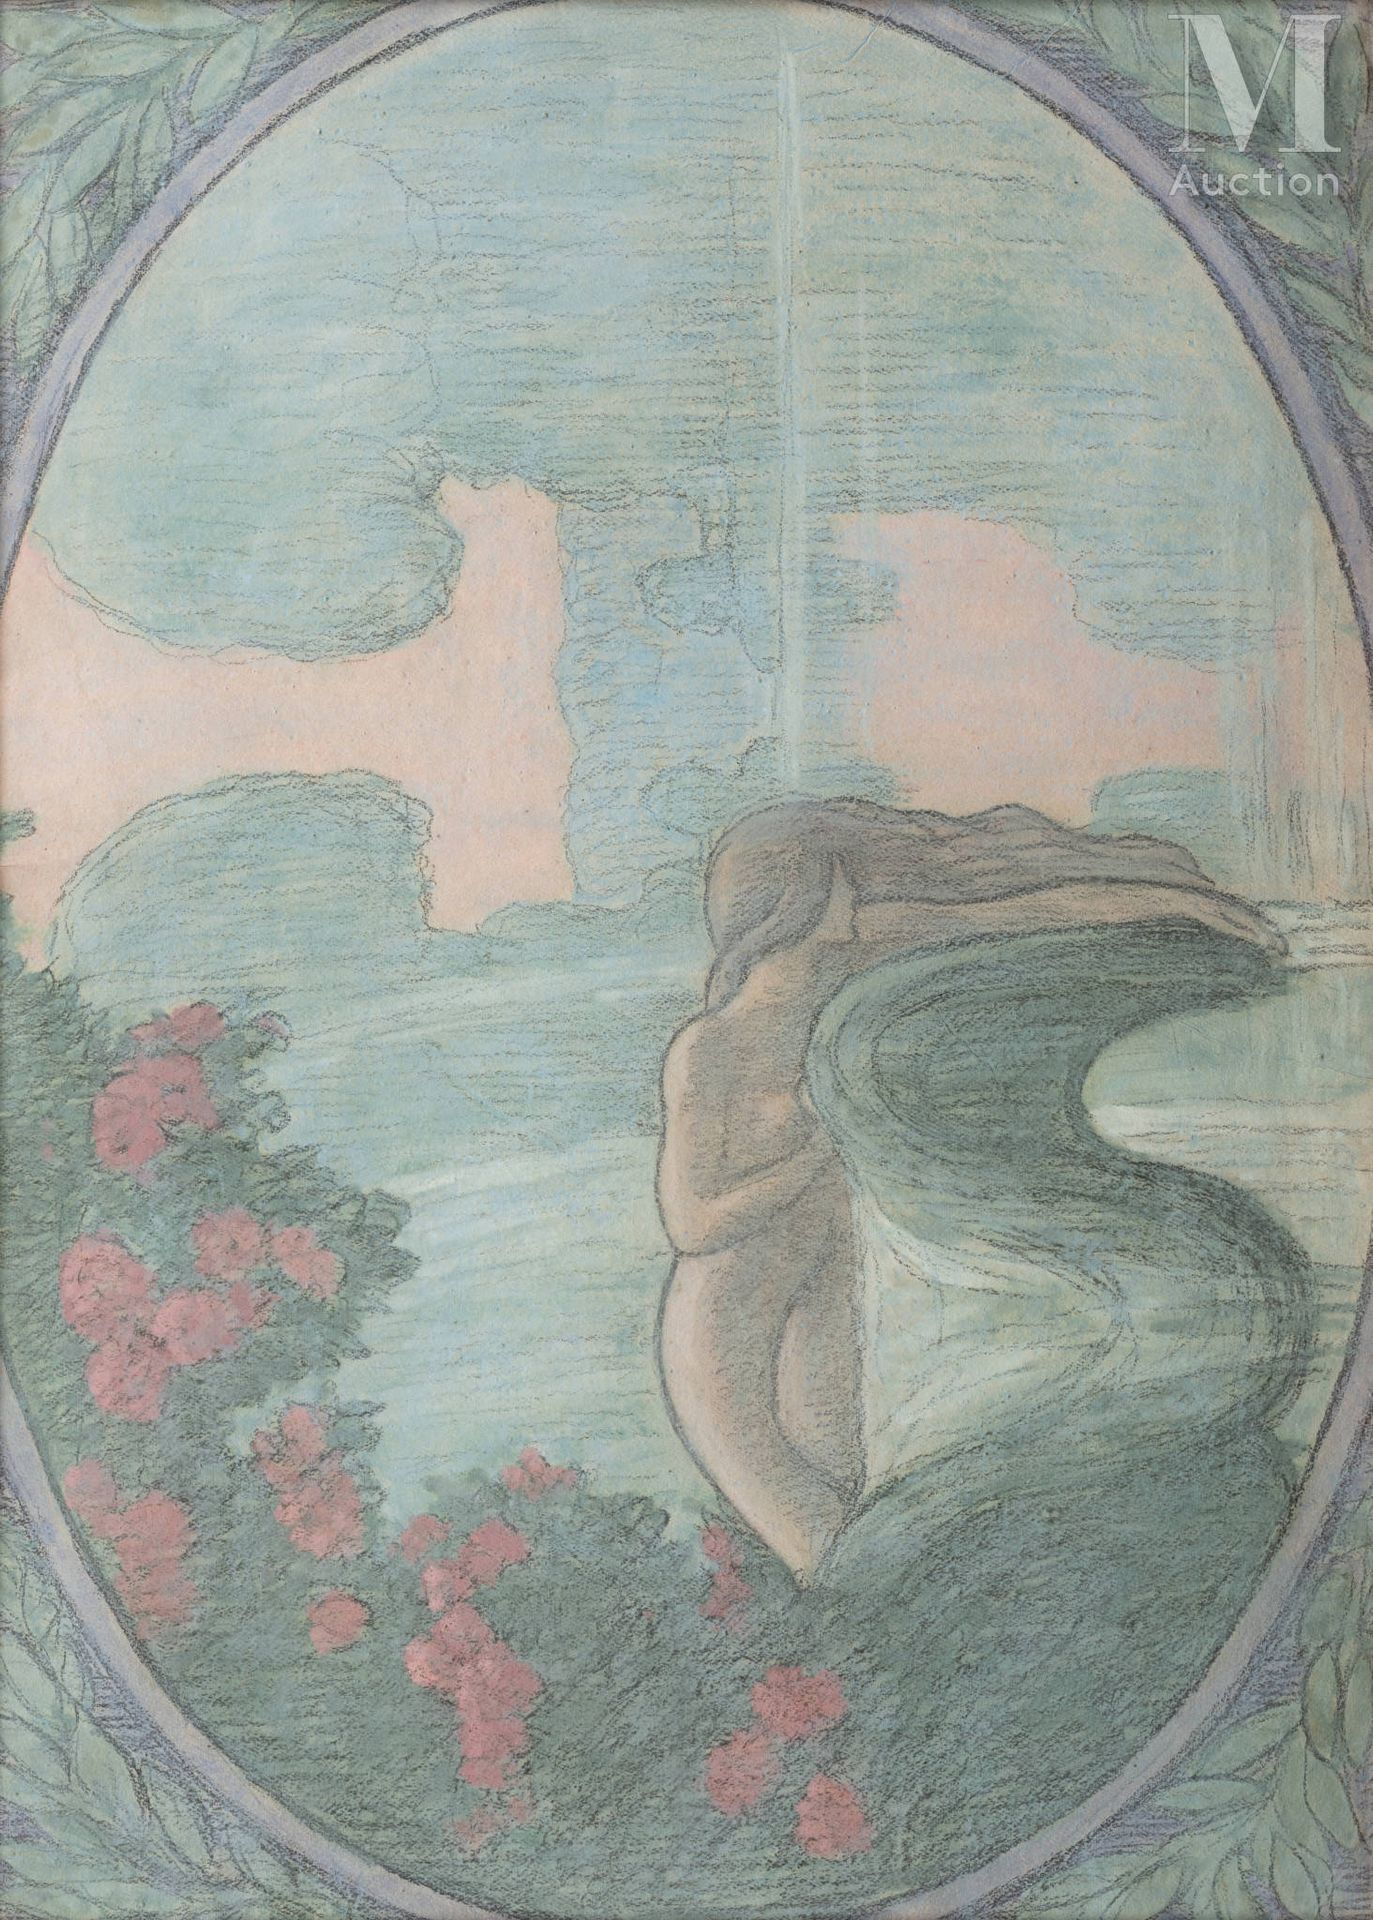 Jean Francis AUBURTIN (Paris 1866 - Dieppe 1930) 盆地里的仙女

纸上水粉和粉笔画

73.5 x 103 cm&hellip;